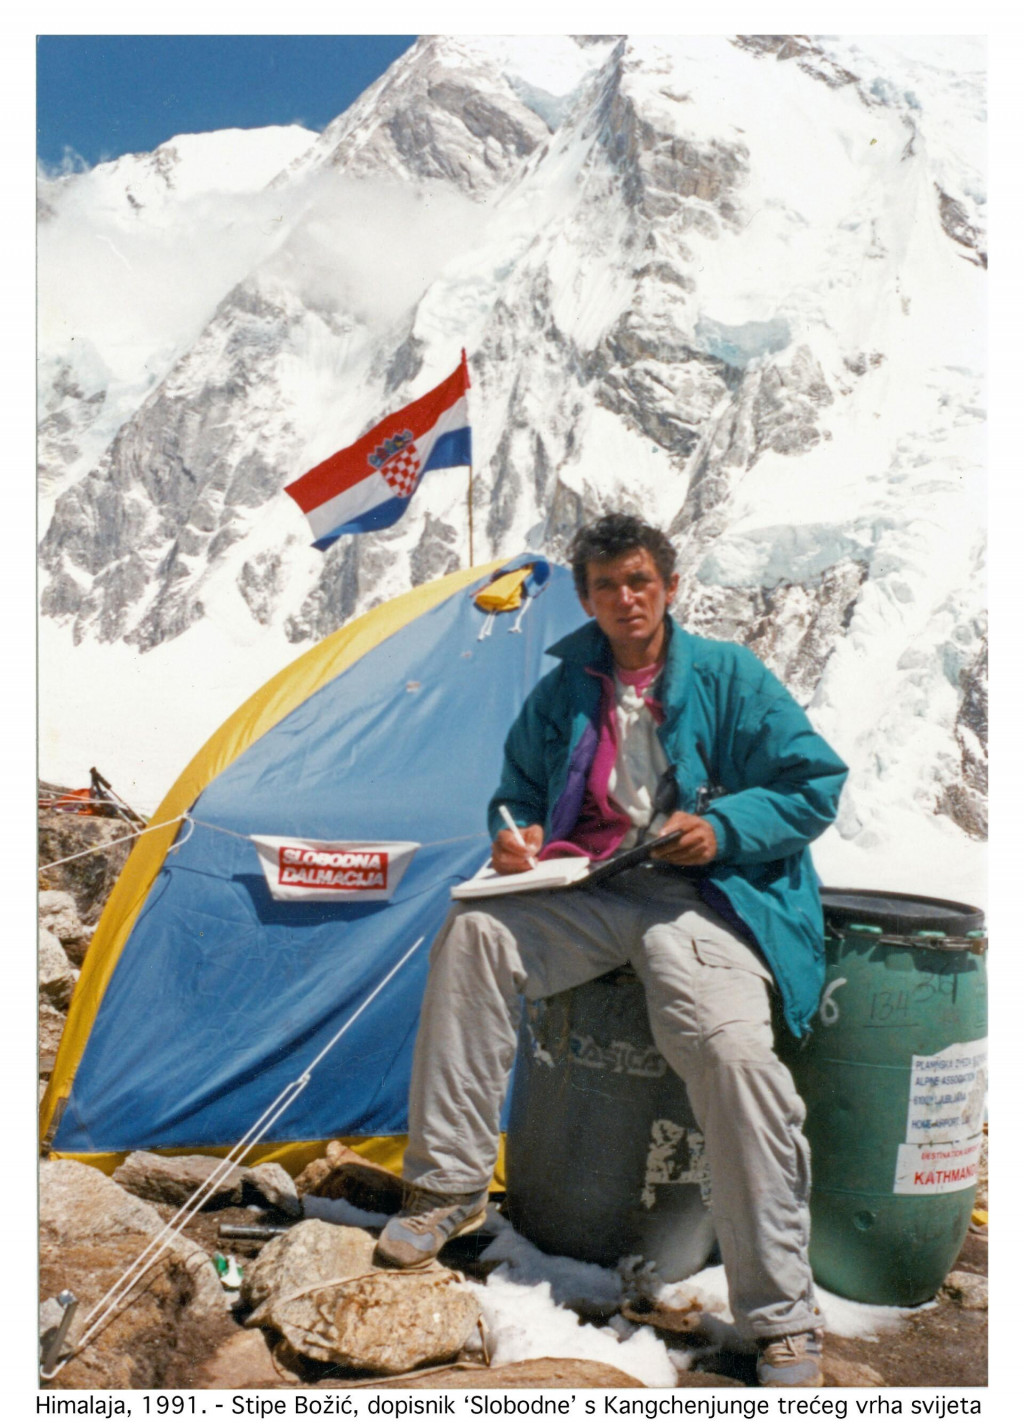 &lt;p&gt;Stipe piše izvještaj za ‘Slobodnu’ s Kangchenjunge, trećeg vrha svijeta, Himalaja 1991. Privatni arhiv&lt;/p&gt;